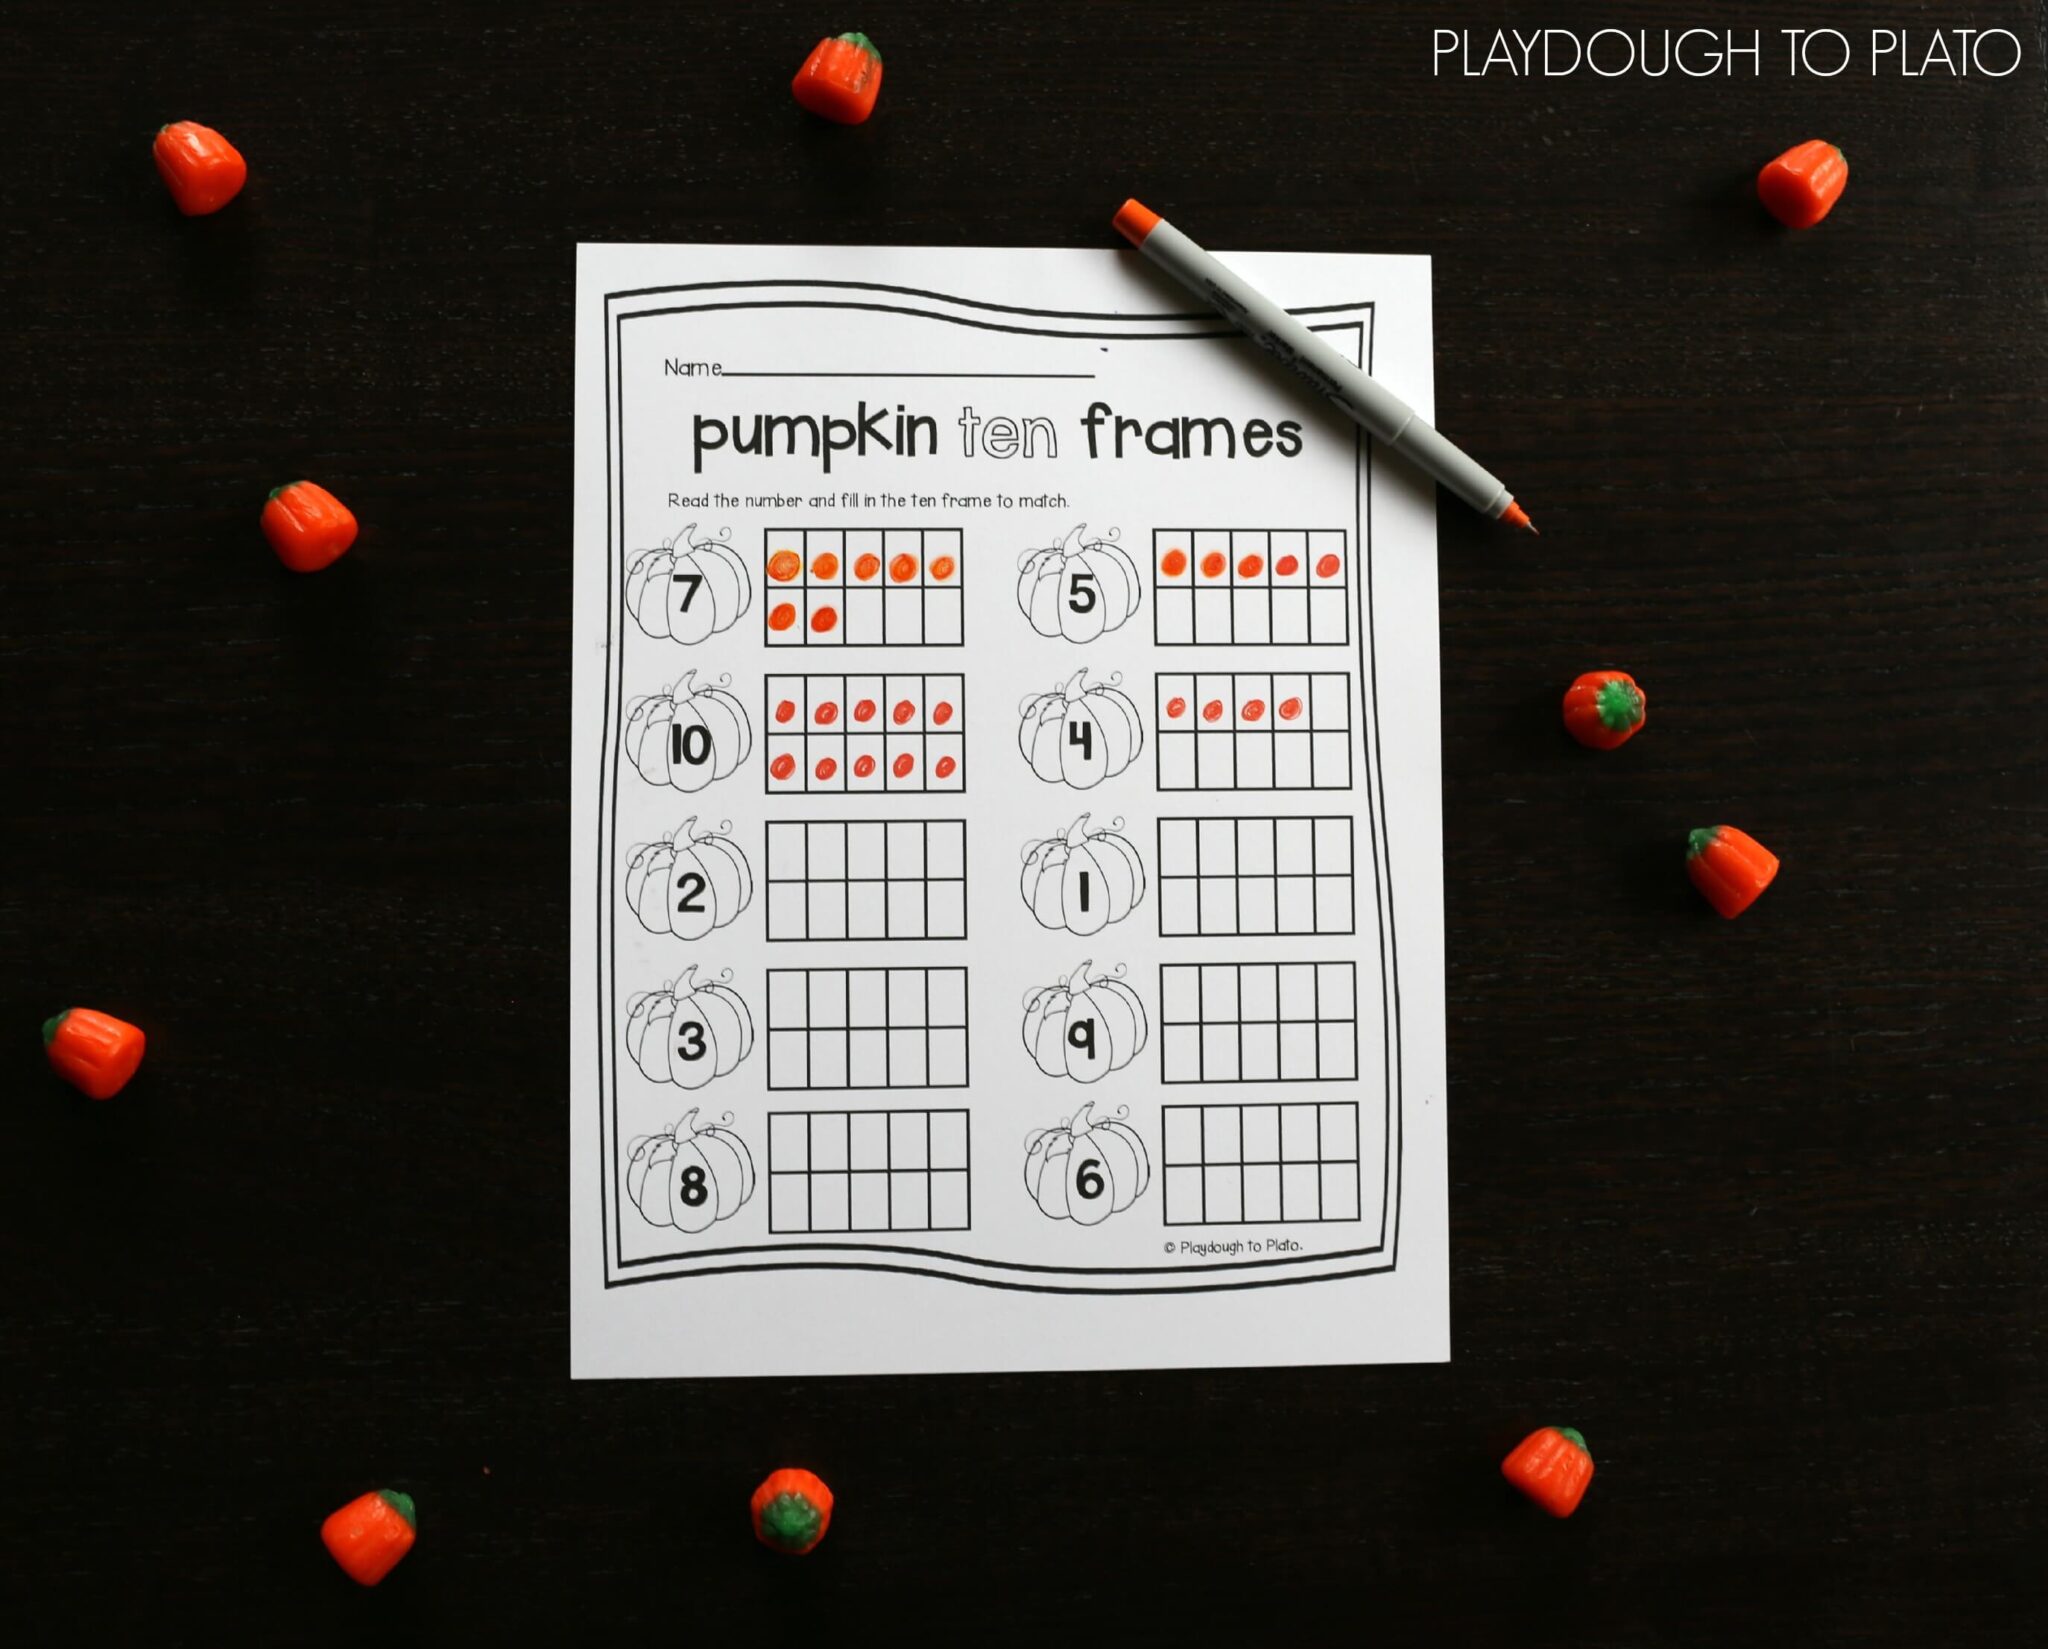 pumpkin-ten-frames-playdough-to-plato